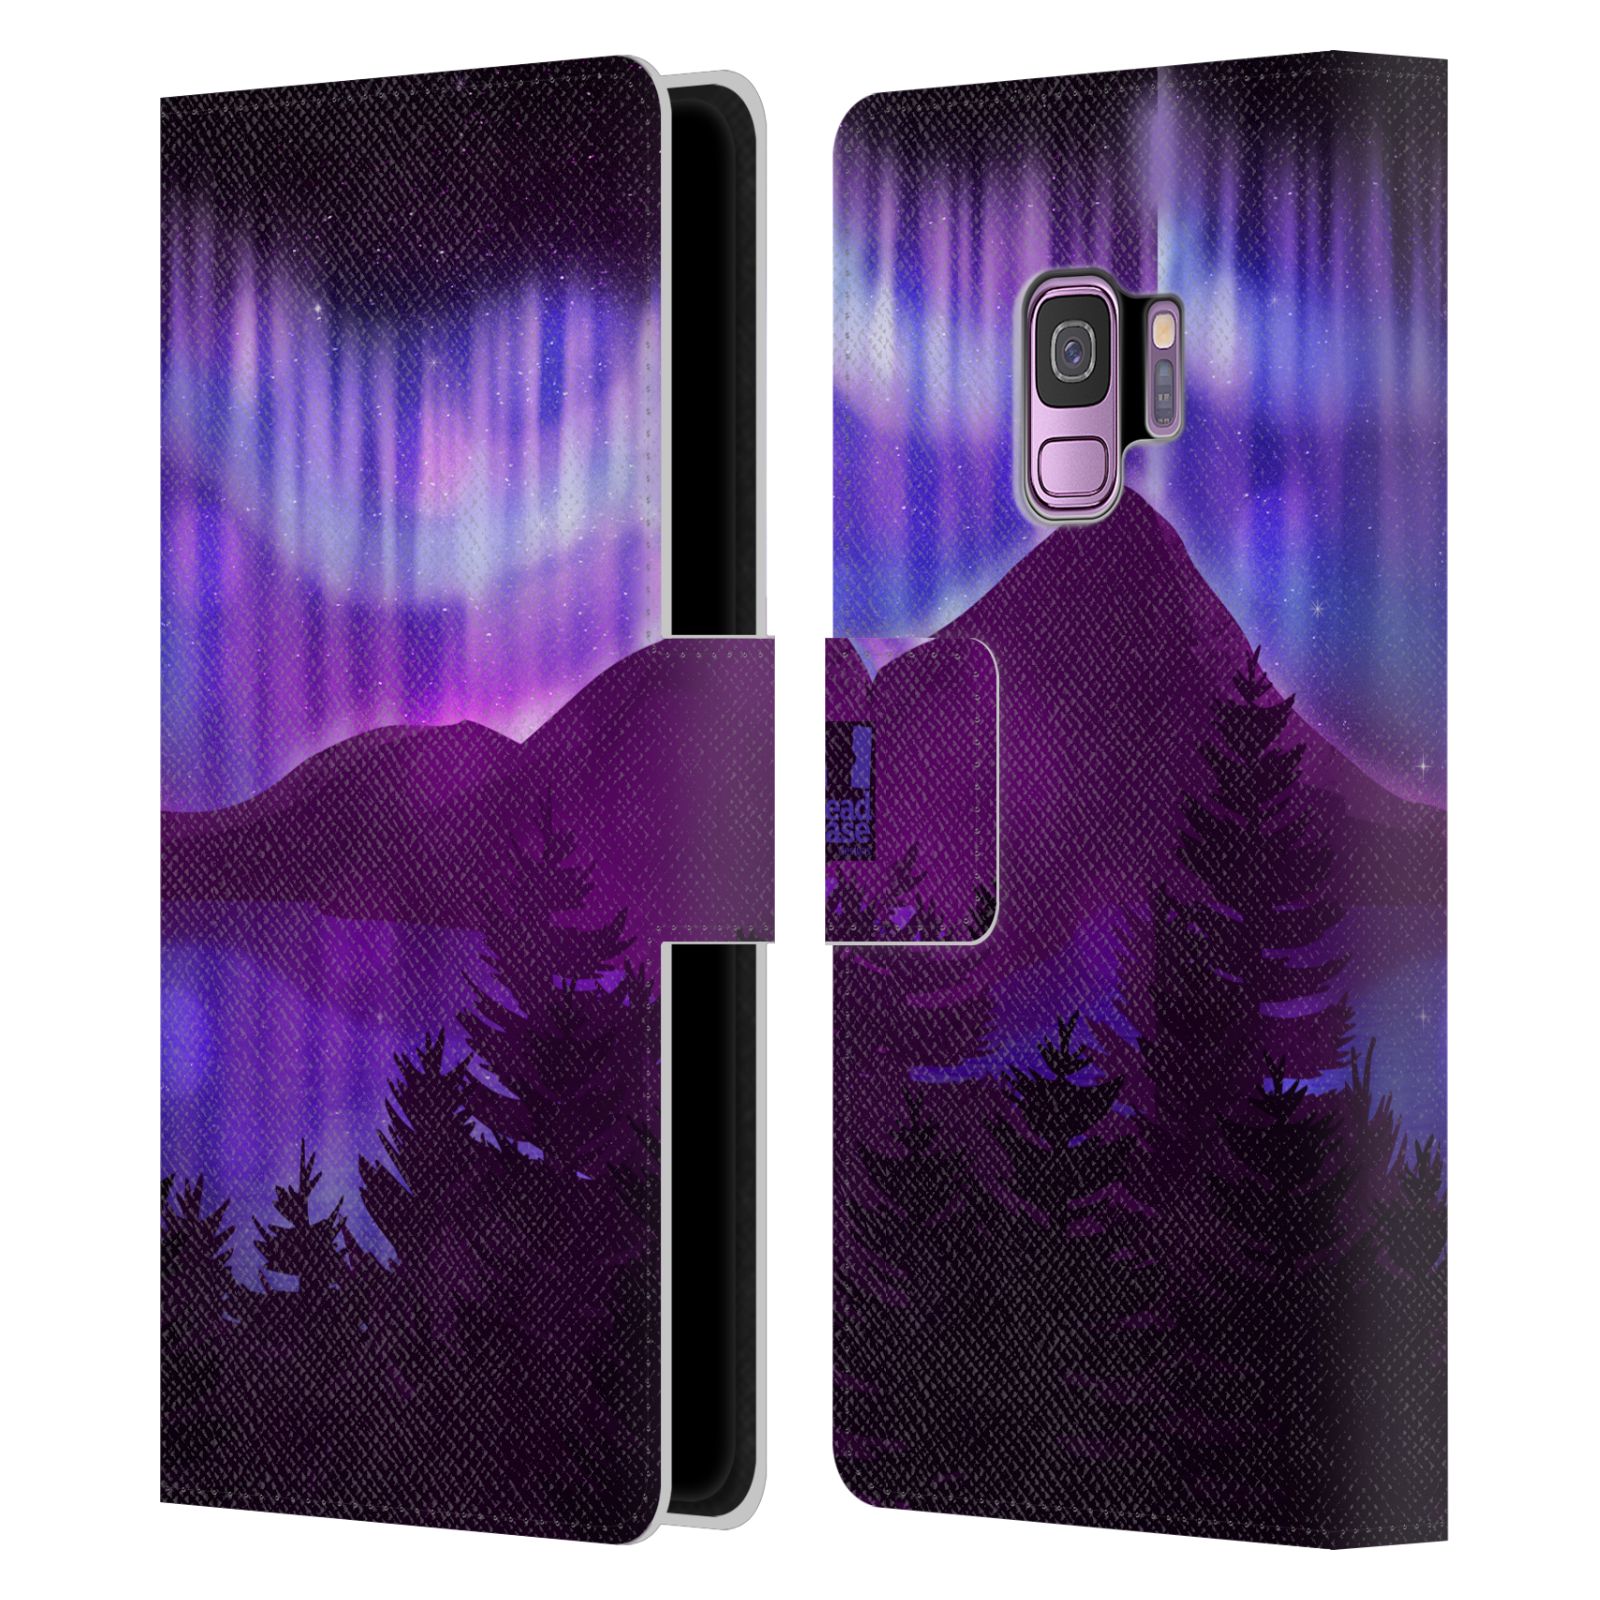 Pouzdro na mobil Samsung Galaxy S9 - HEAD CASE - Hory a lesy fialový odstín